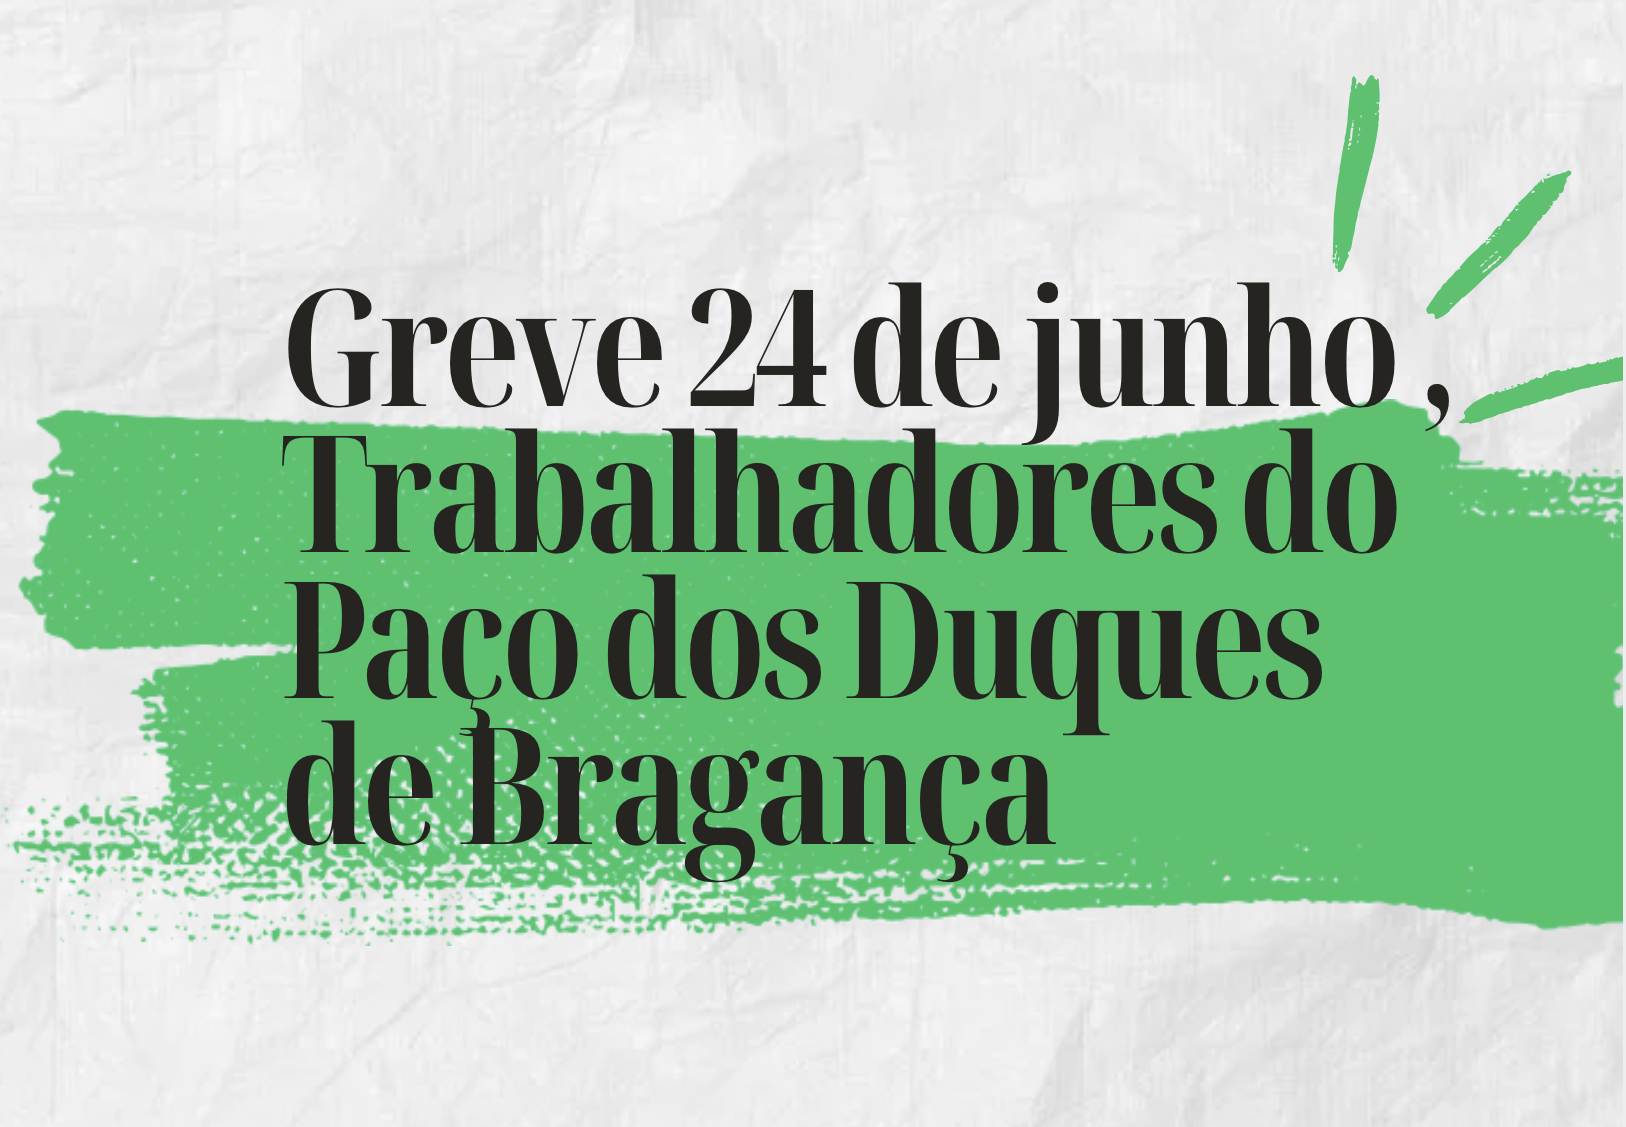 Greve dos trabalhadores do Paço dos Duques de Bragança no dia 24 de junho